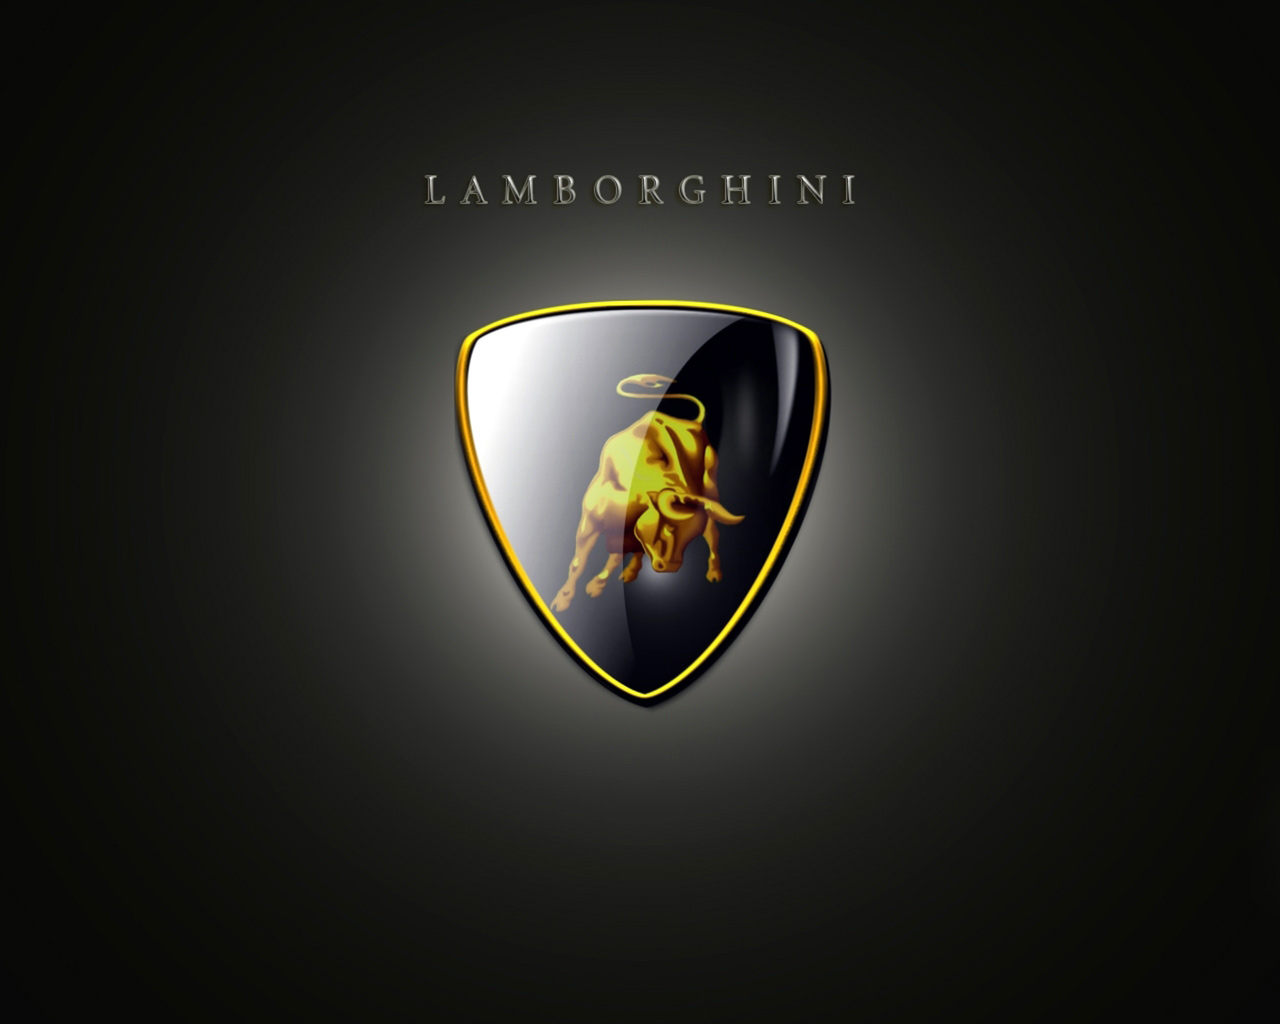 Lamborghini Cars Wallpapers Hd